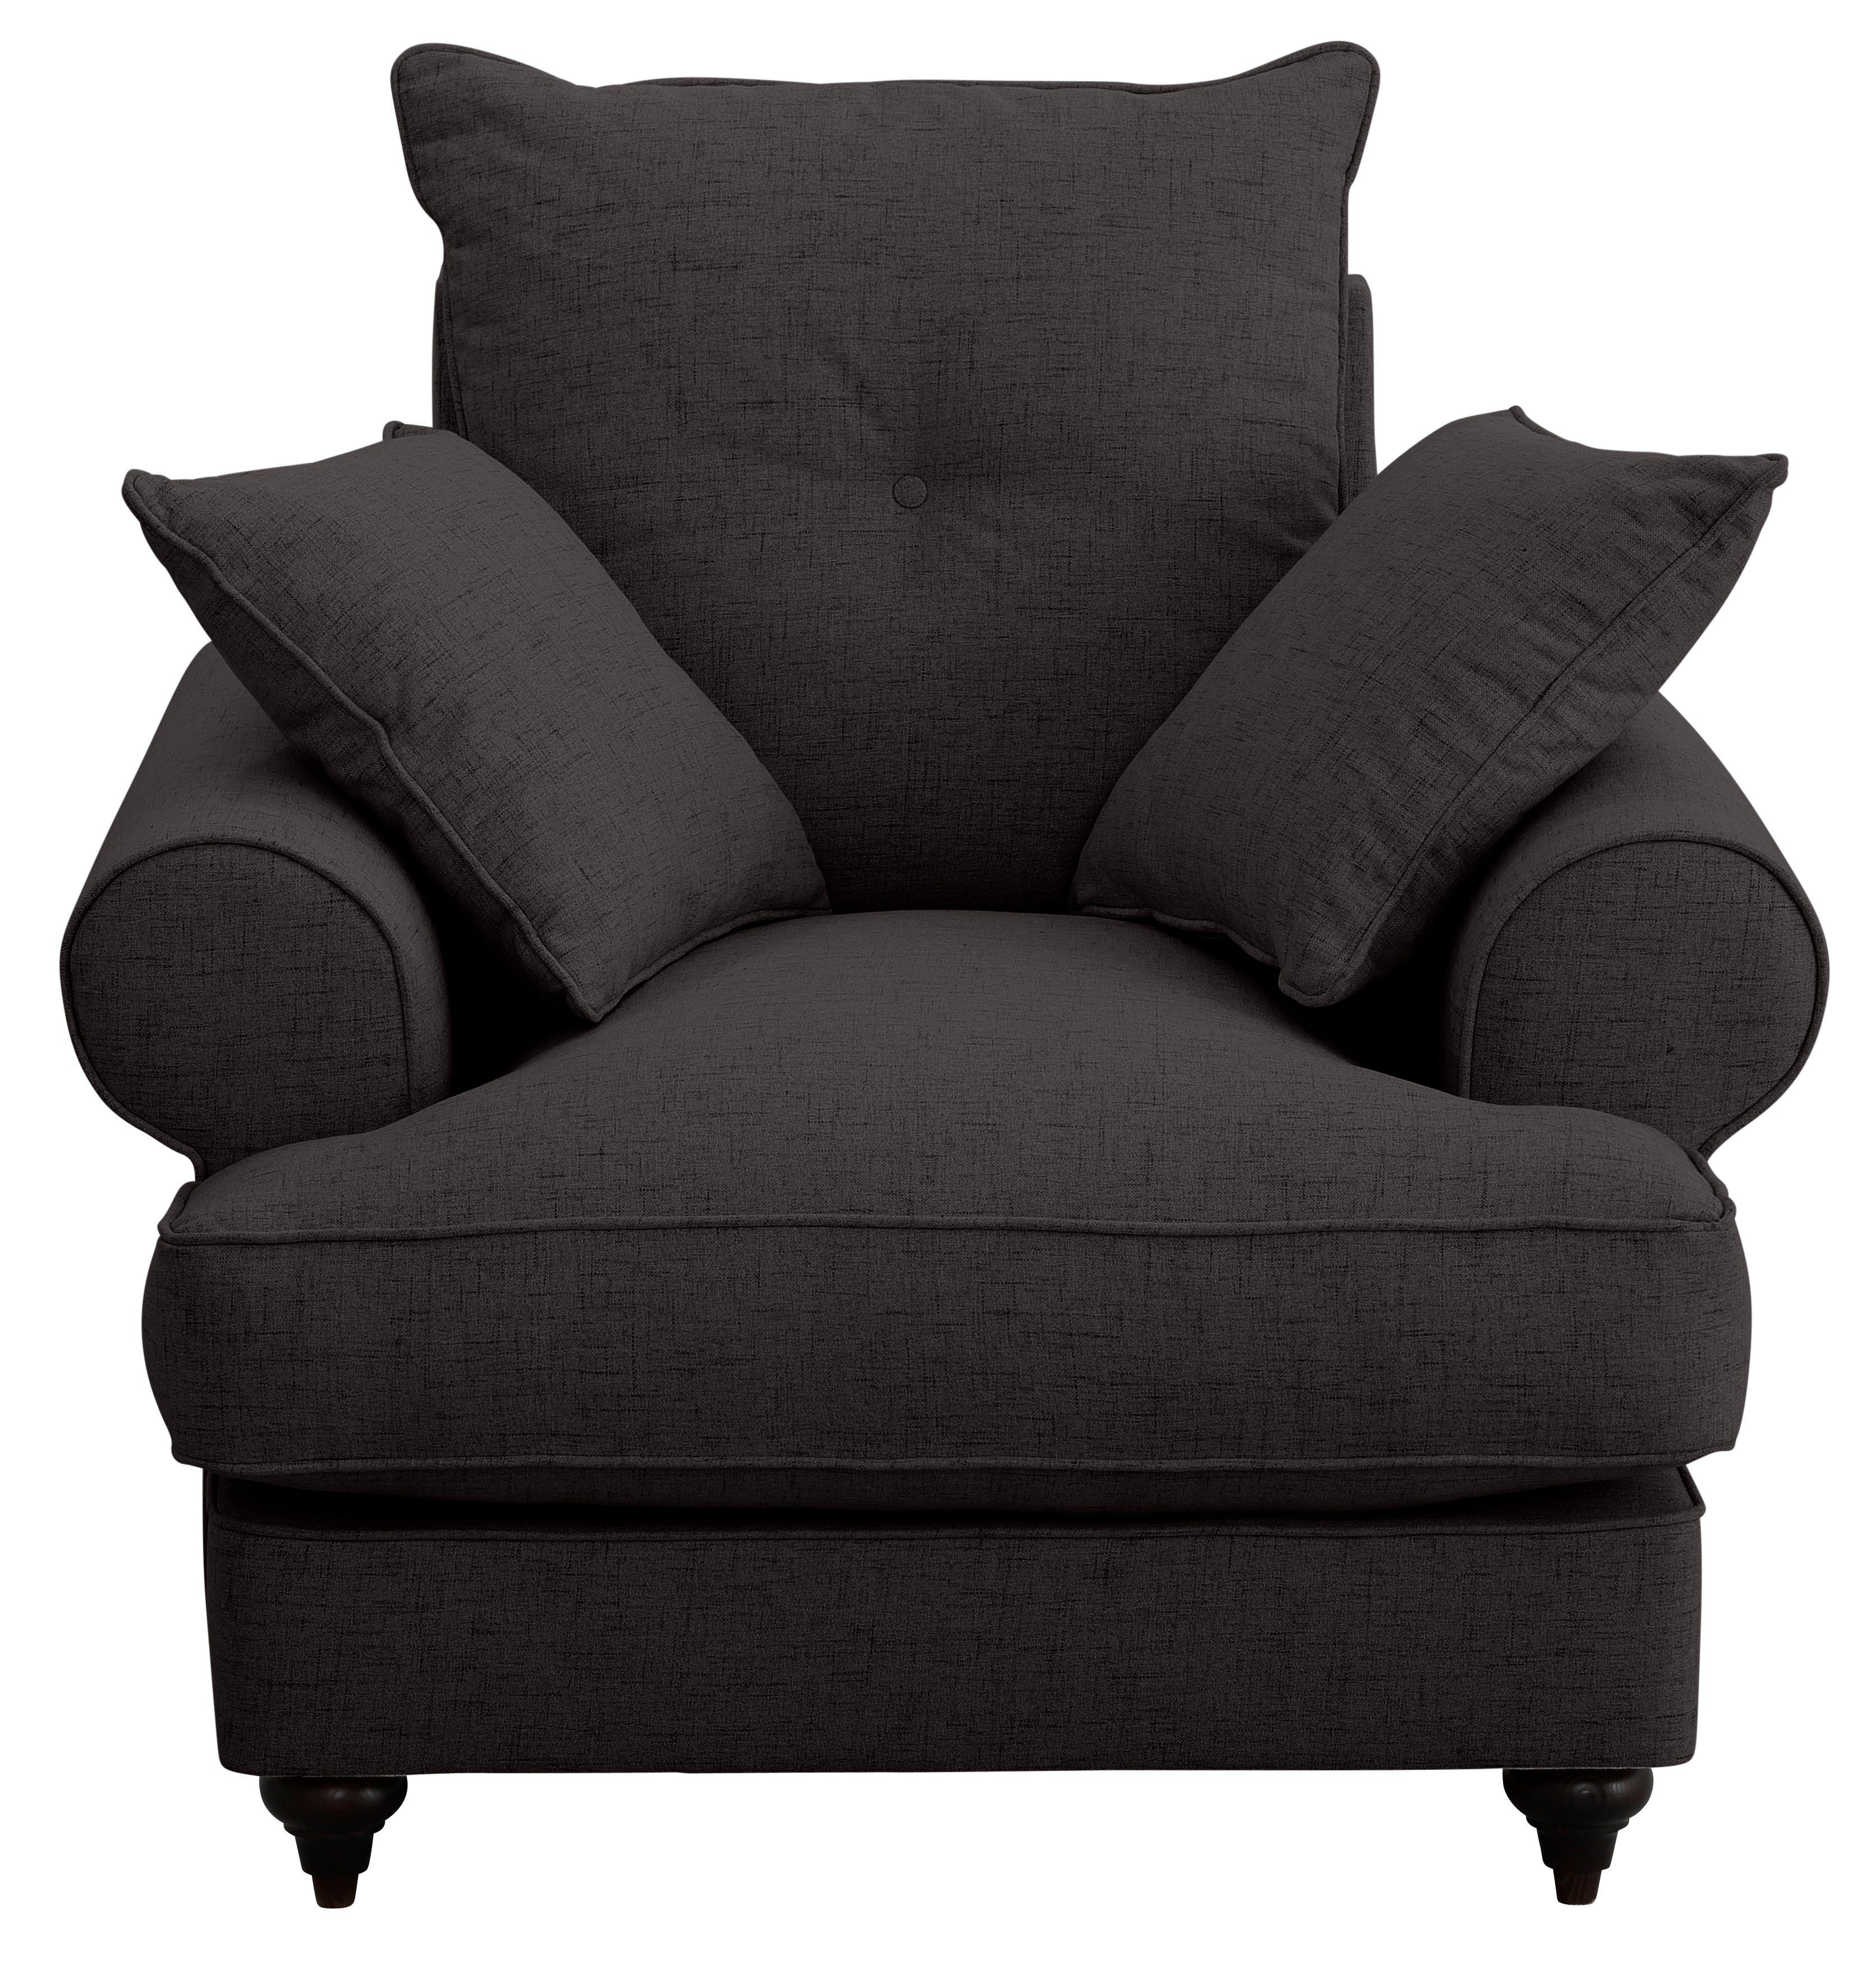 Home affaire Farben Bloomer, erhältlich mit hochwertigem Sessel brown dark Kaltschaum, in verschiedenen